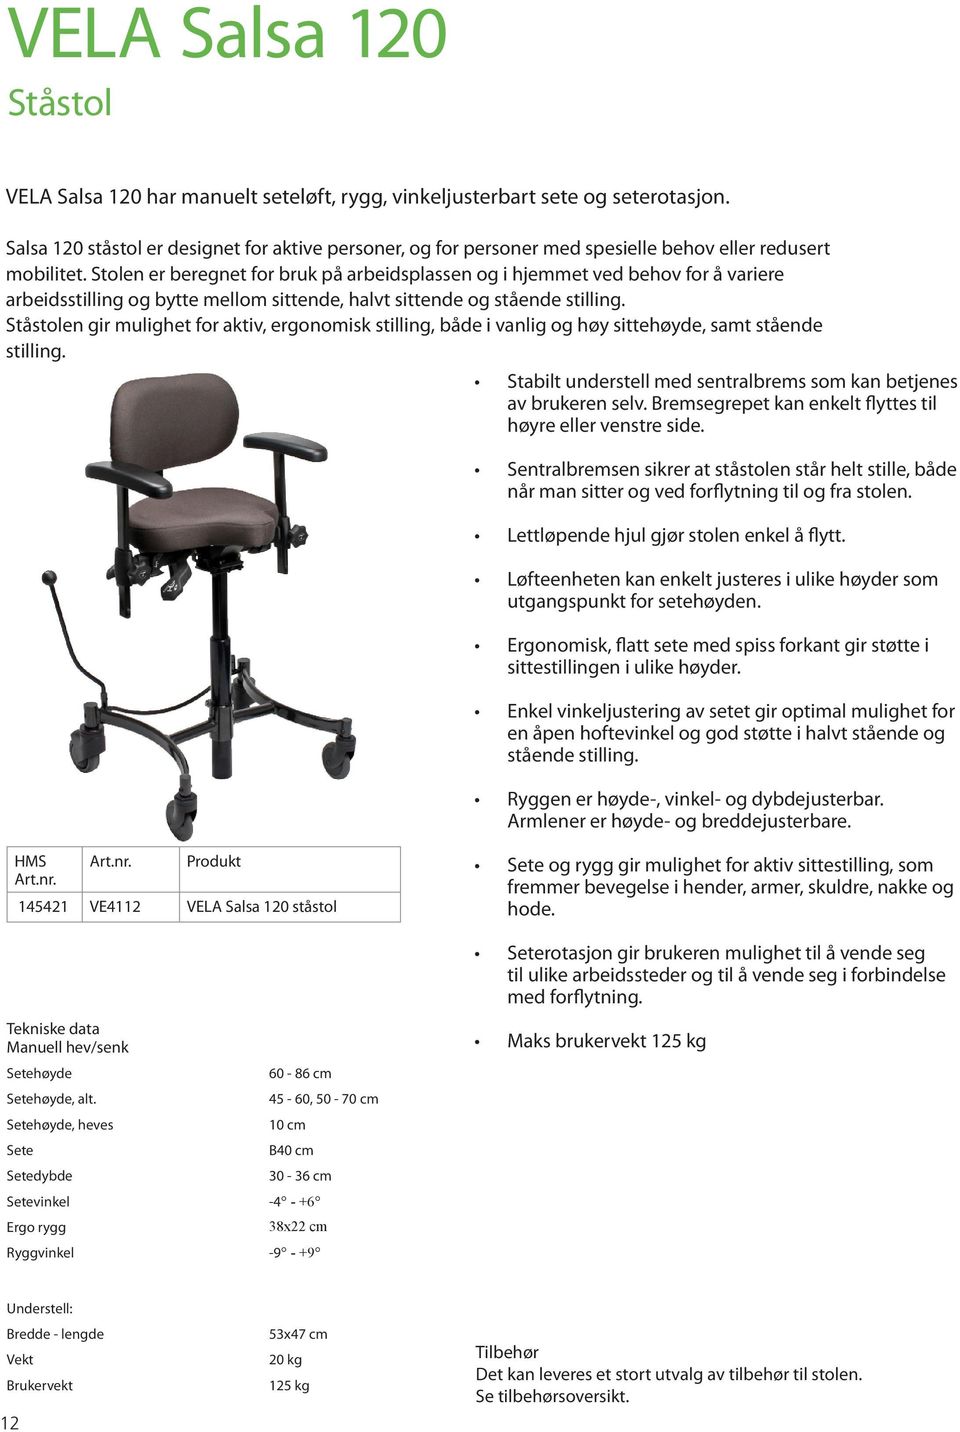 Stolen er beregnet for bruk på arbeidsplassen og i hjemmet ved behov for å variere arbeidsstilling og bytte mellom sittende, halvt sittende og stående stilling.